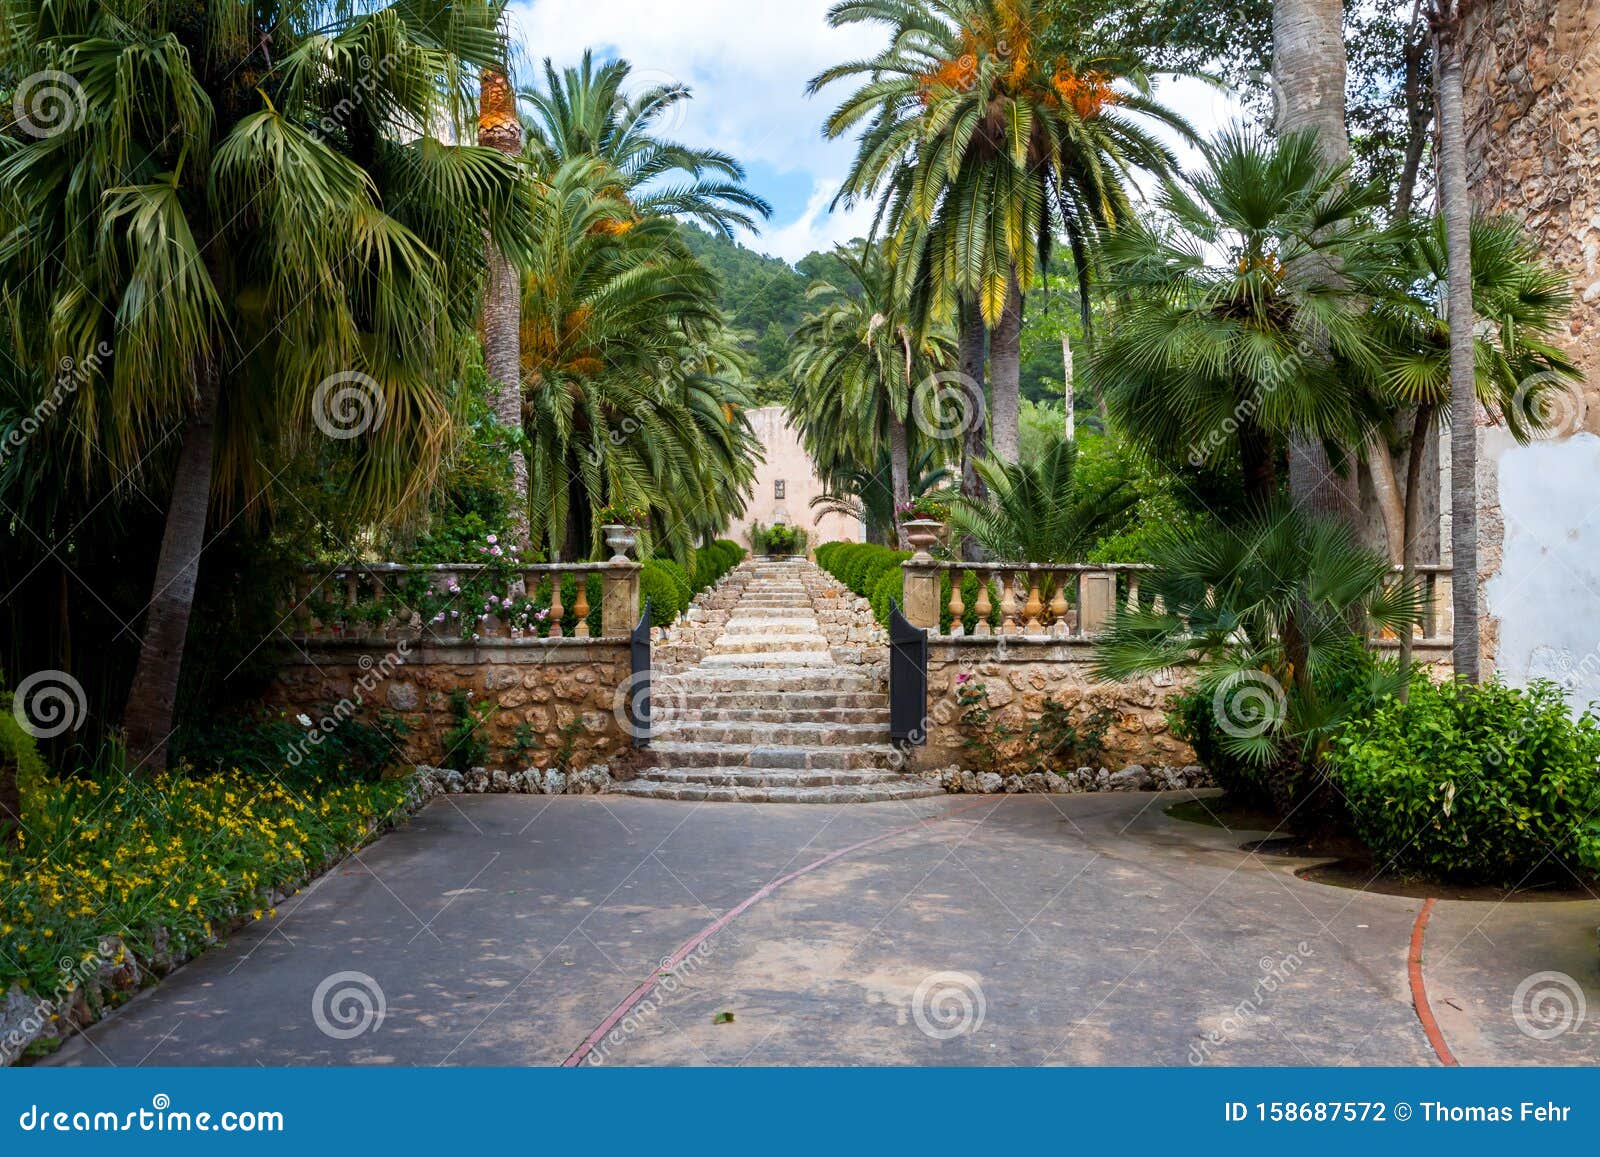 the garden of jardines de alfabia